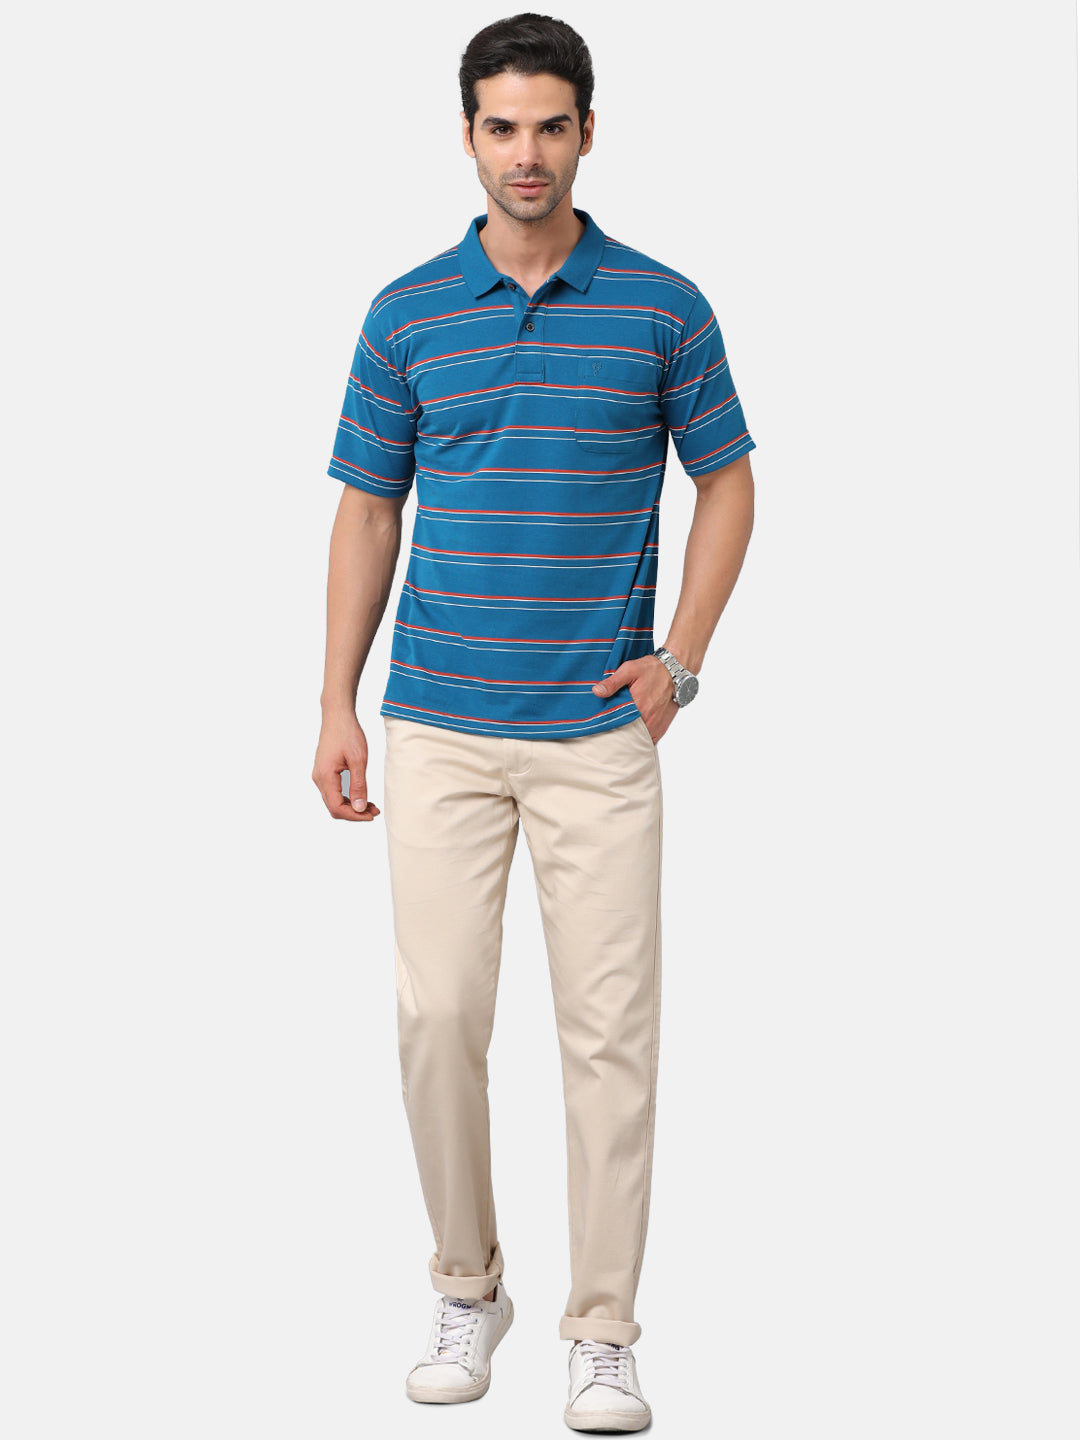 Classic Polo Mens Cotton Blend Striped Authentic Fit Polo Neck Blue Color T-Shirt | Avon 484b